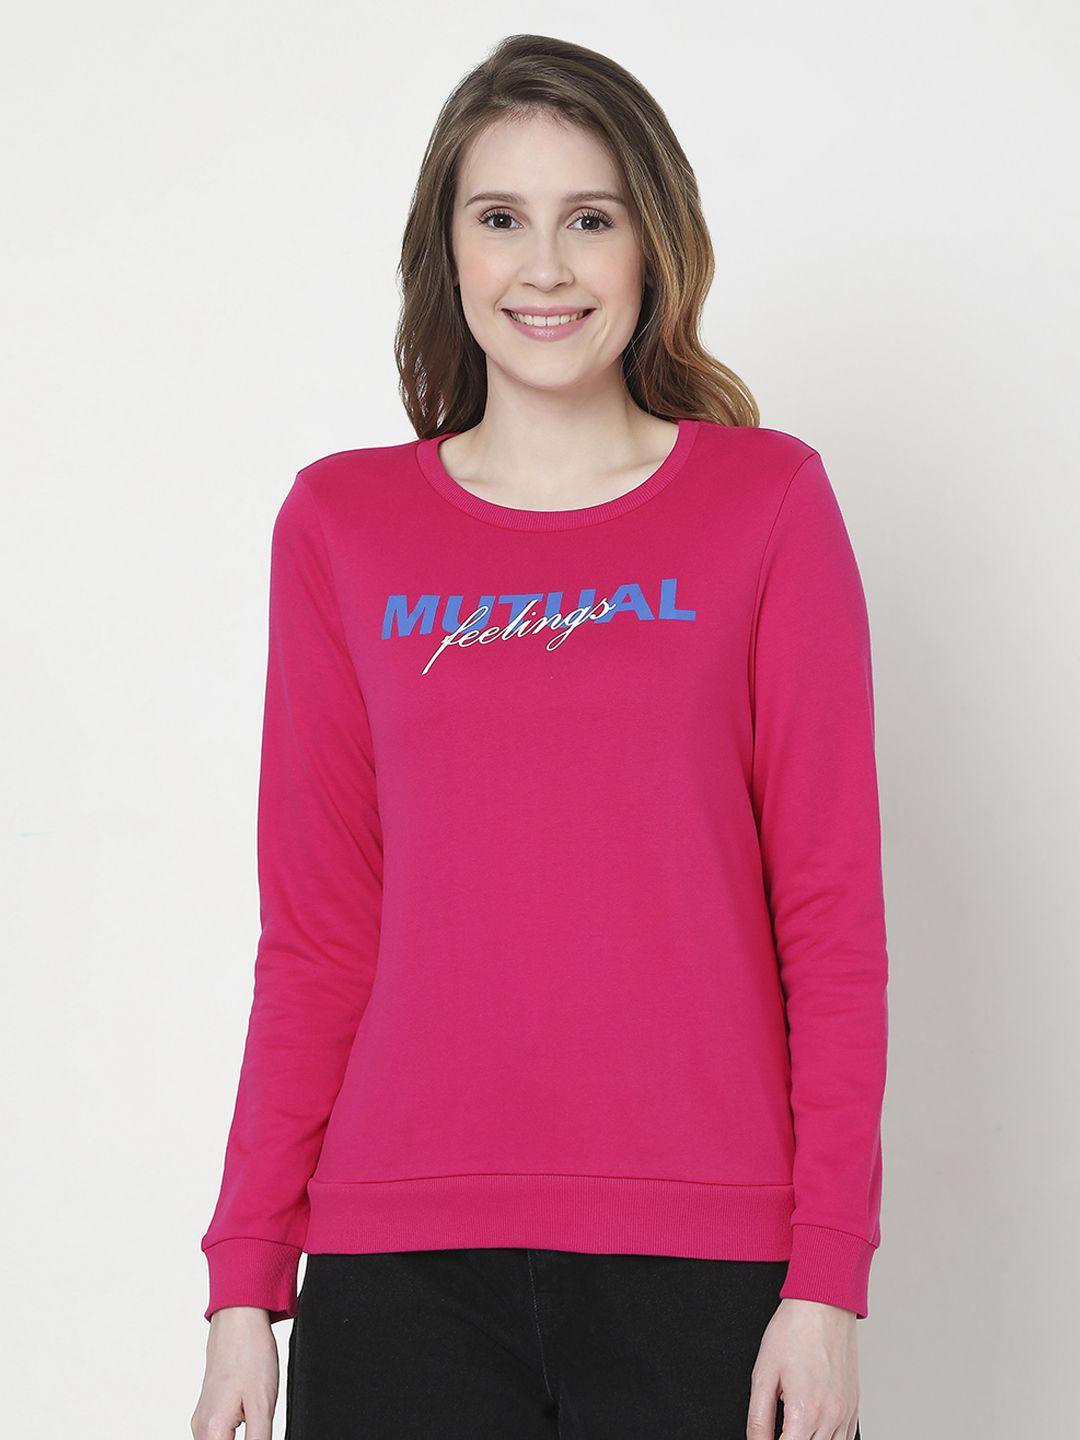 vero moda women fuchsia pink printed pure cotton sweatshirt